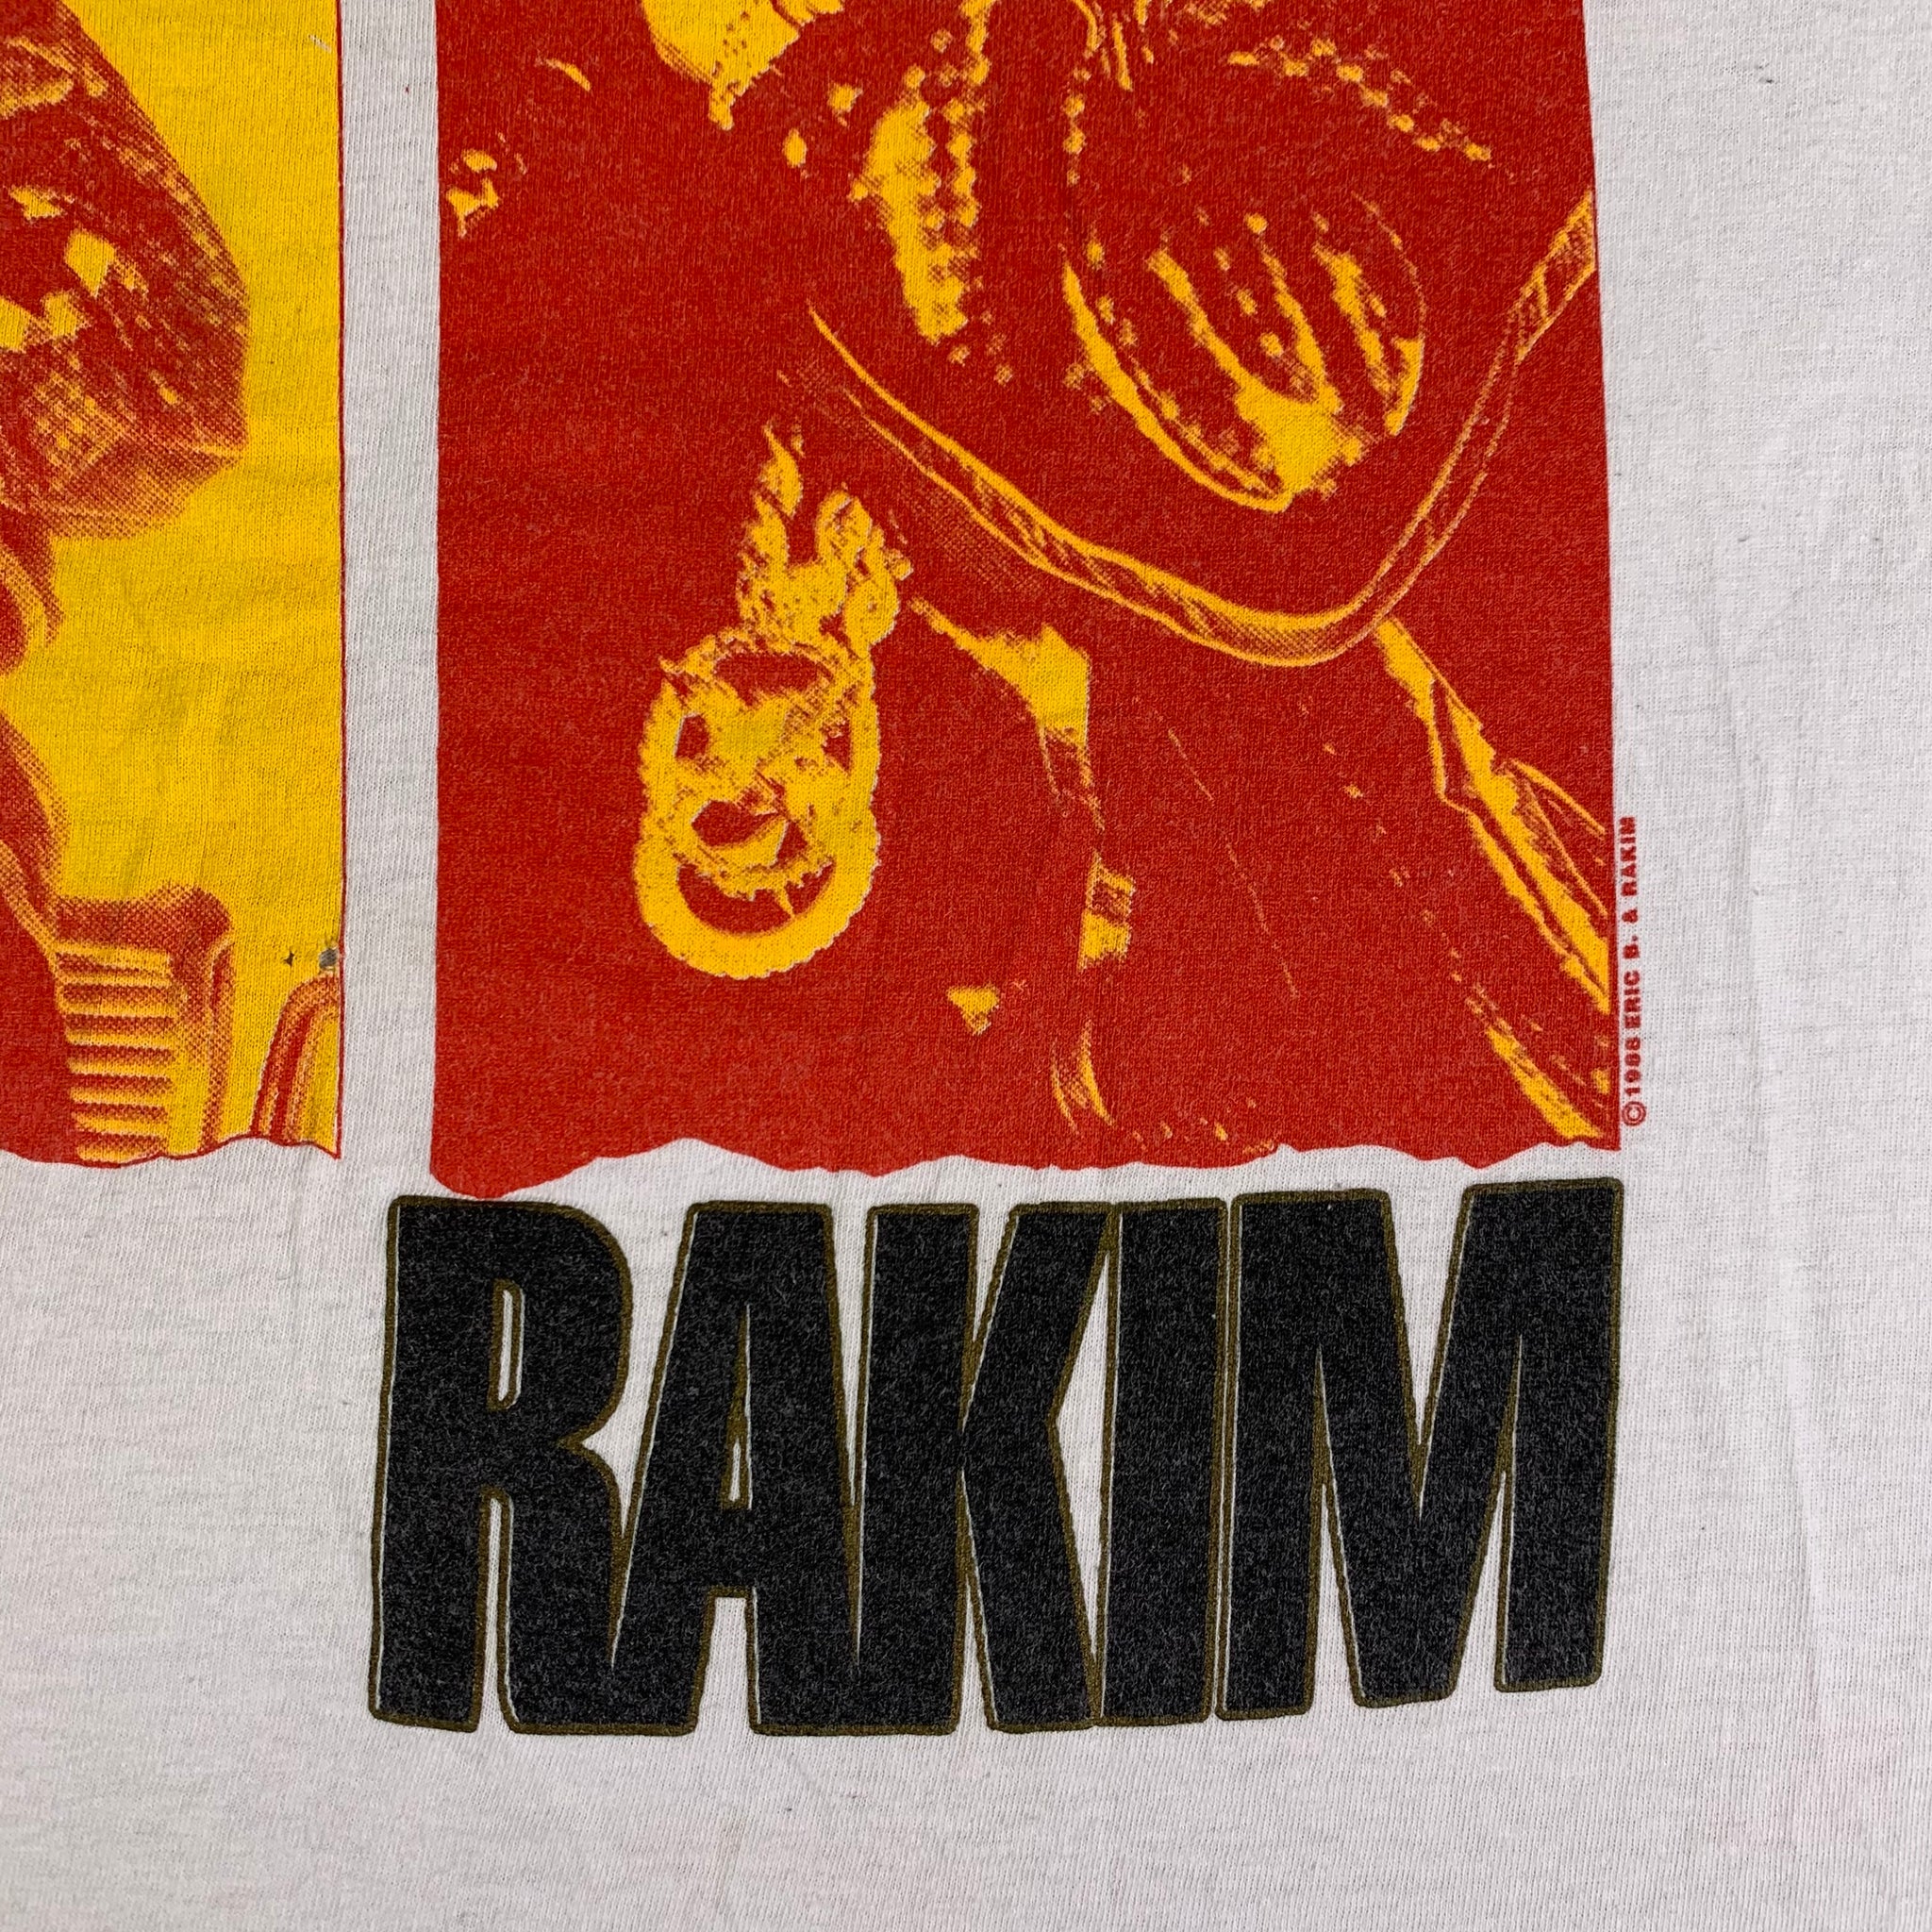 2002年春 80s 当時物 Eric B and Rakim ビンテージ Tシャツ | www